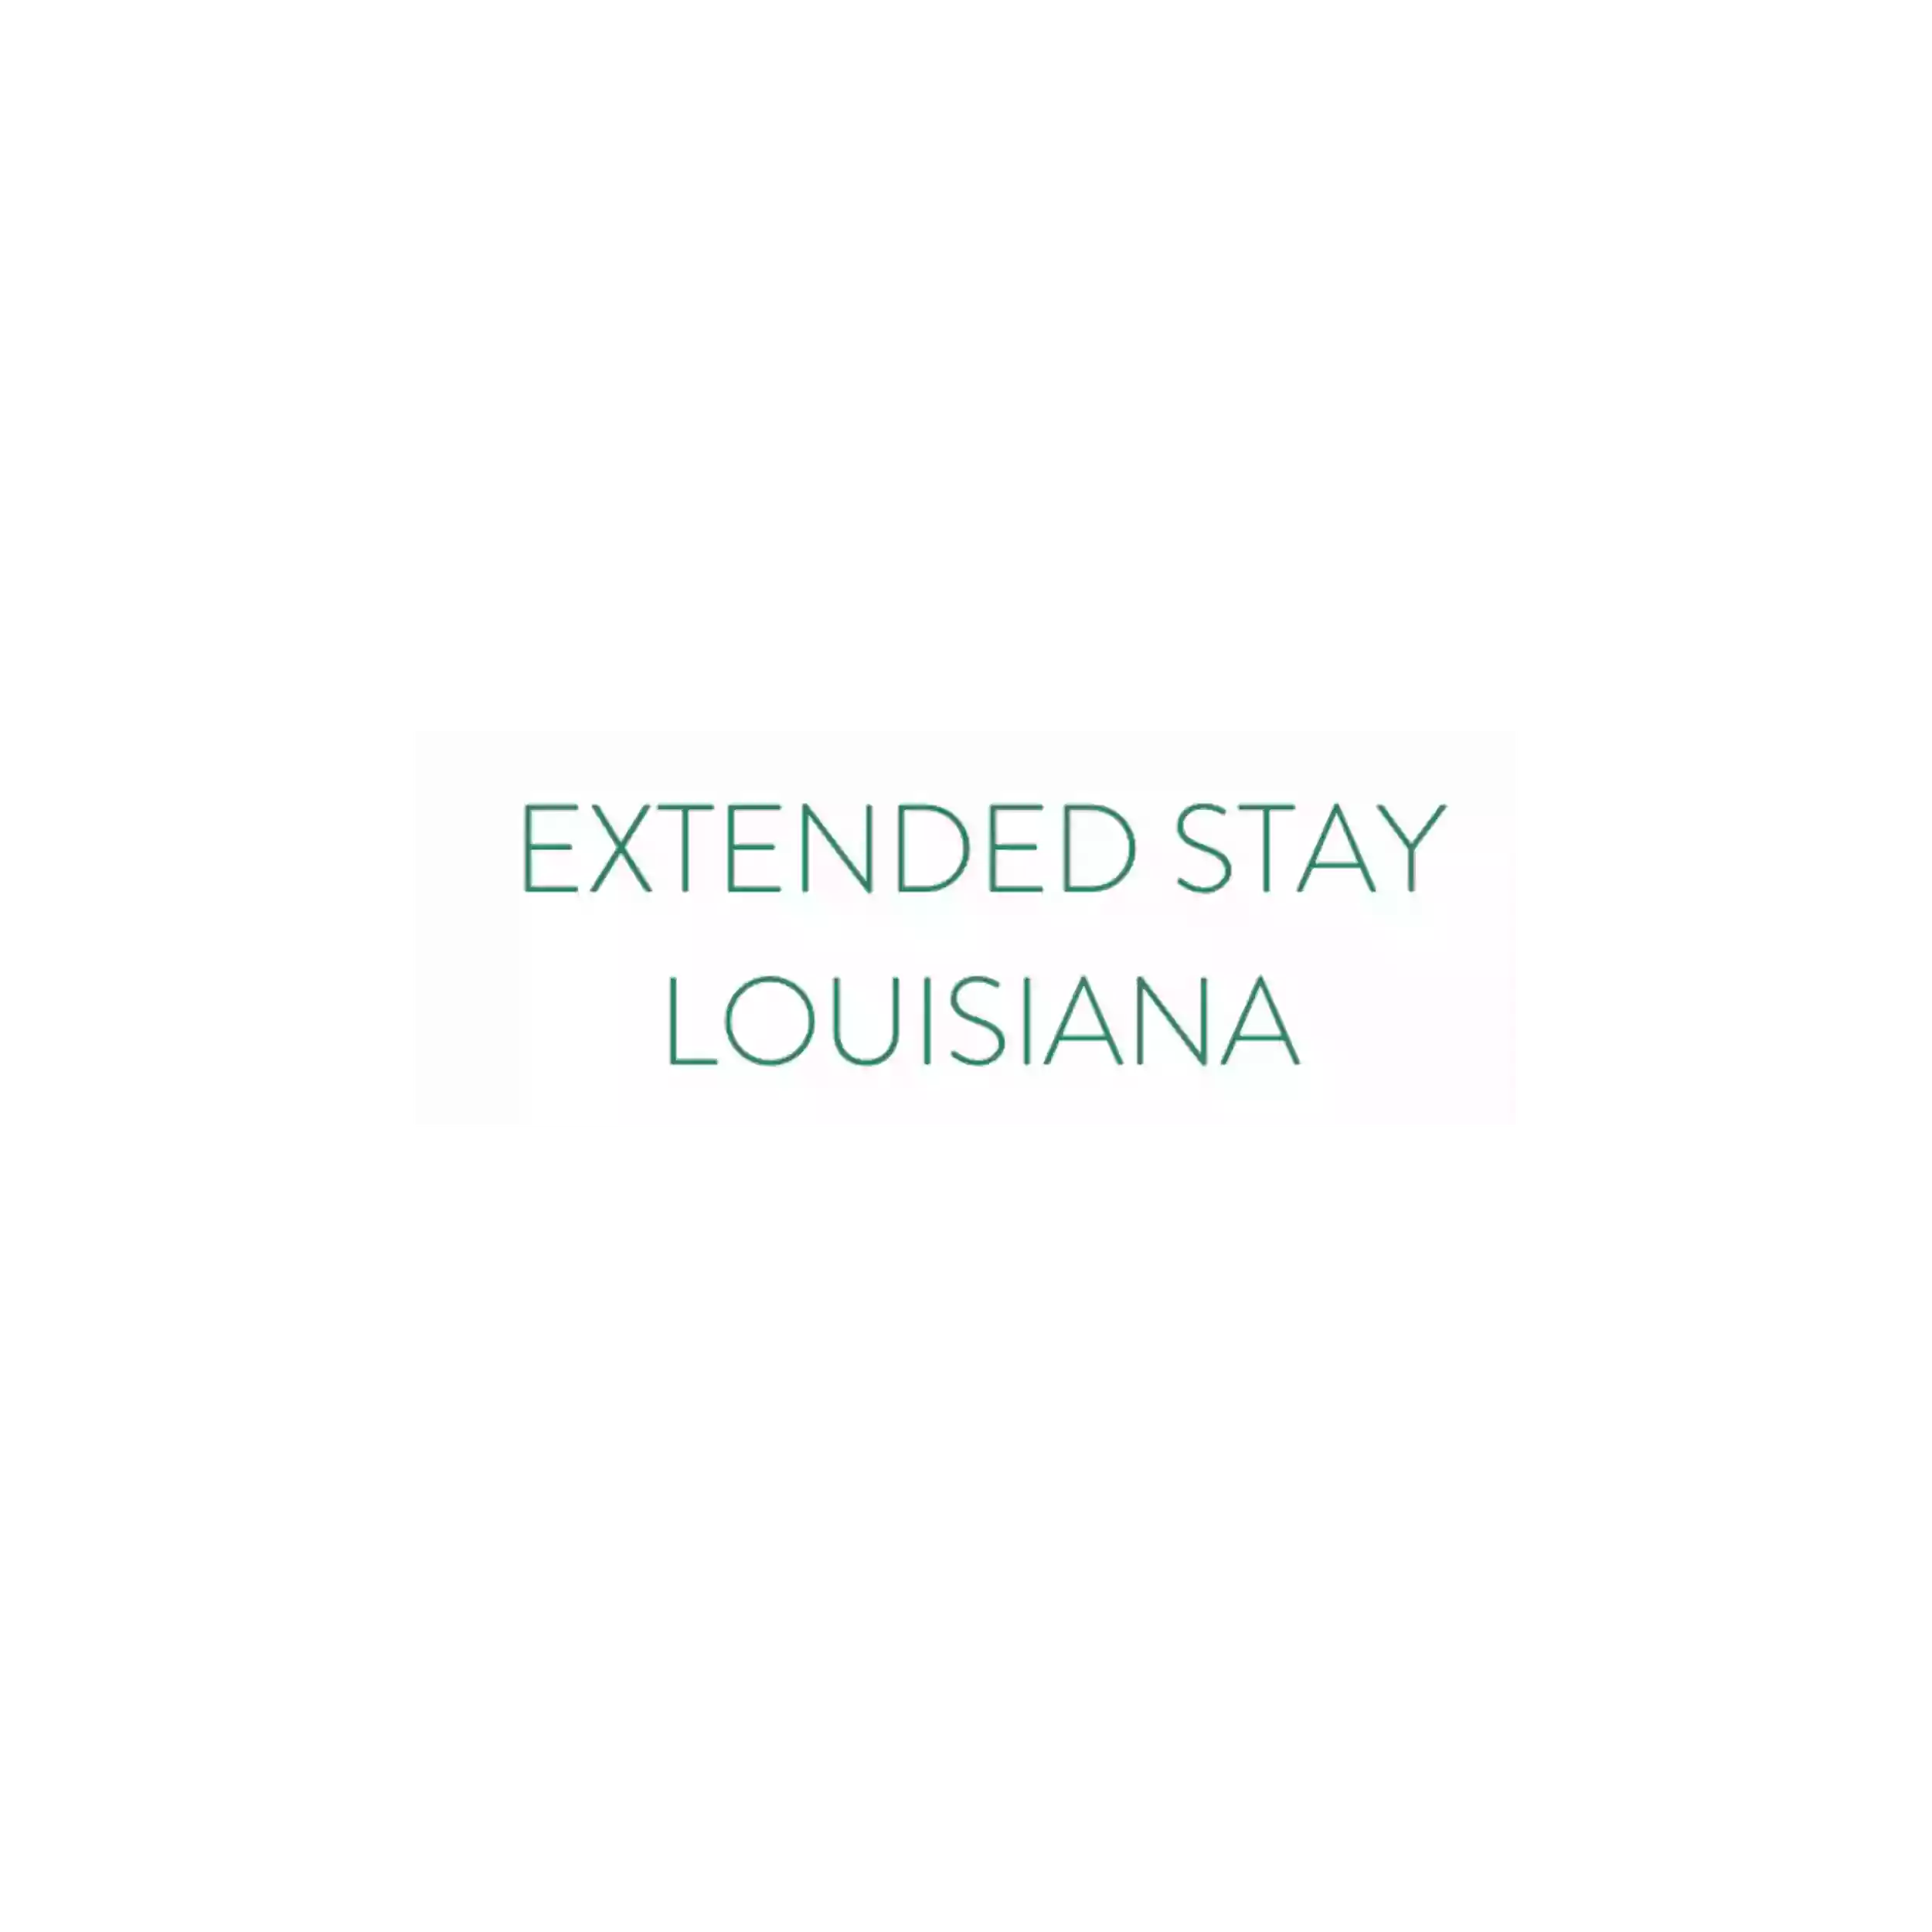 Extended Stay Louisiana